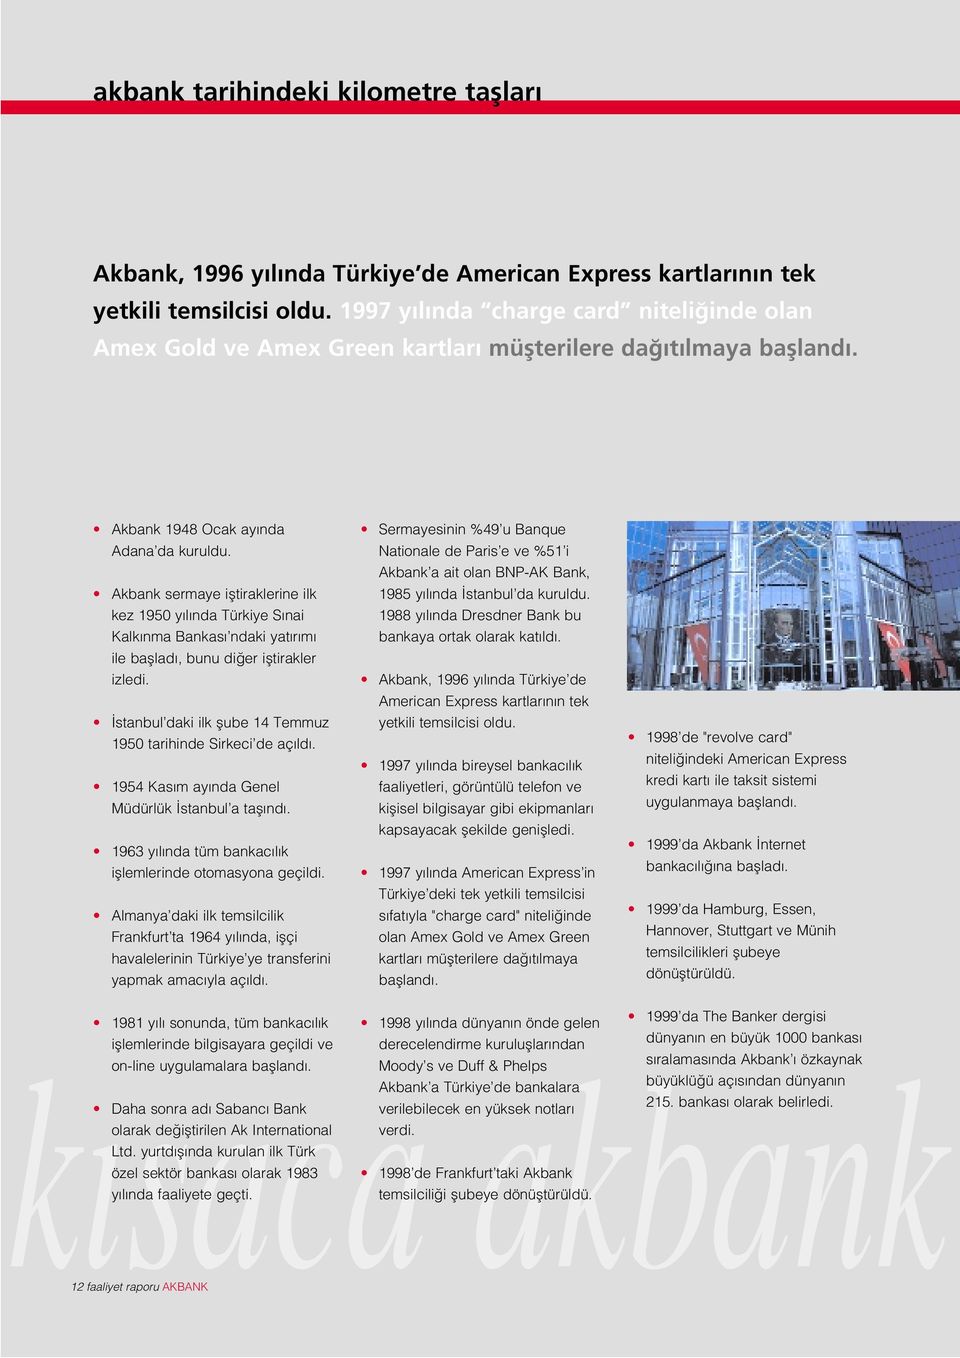 Akbank sermaye ifltiraklerine ilk kez 1950 y l nda Türkiye S nai Kalk nma Bankas ndaki yat r m ile bafllad, bunu di er ifltirakler izledi.